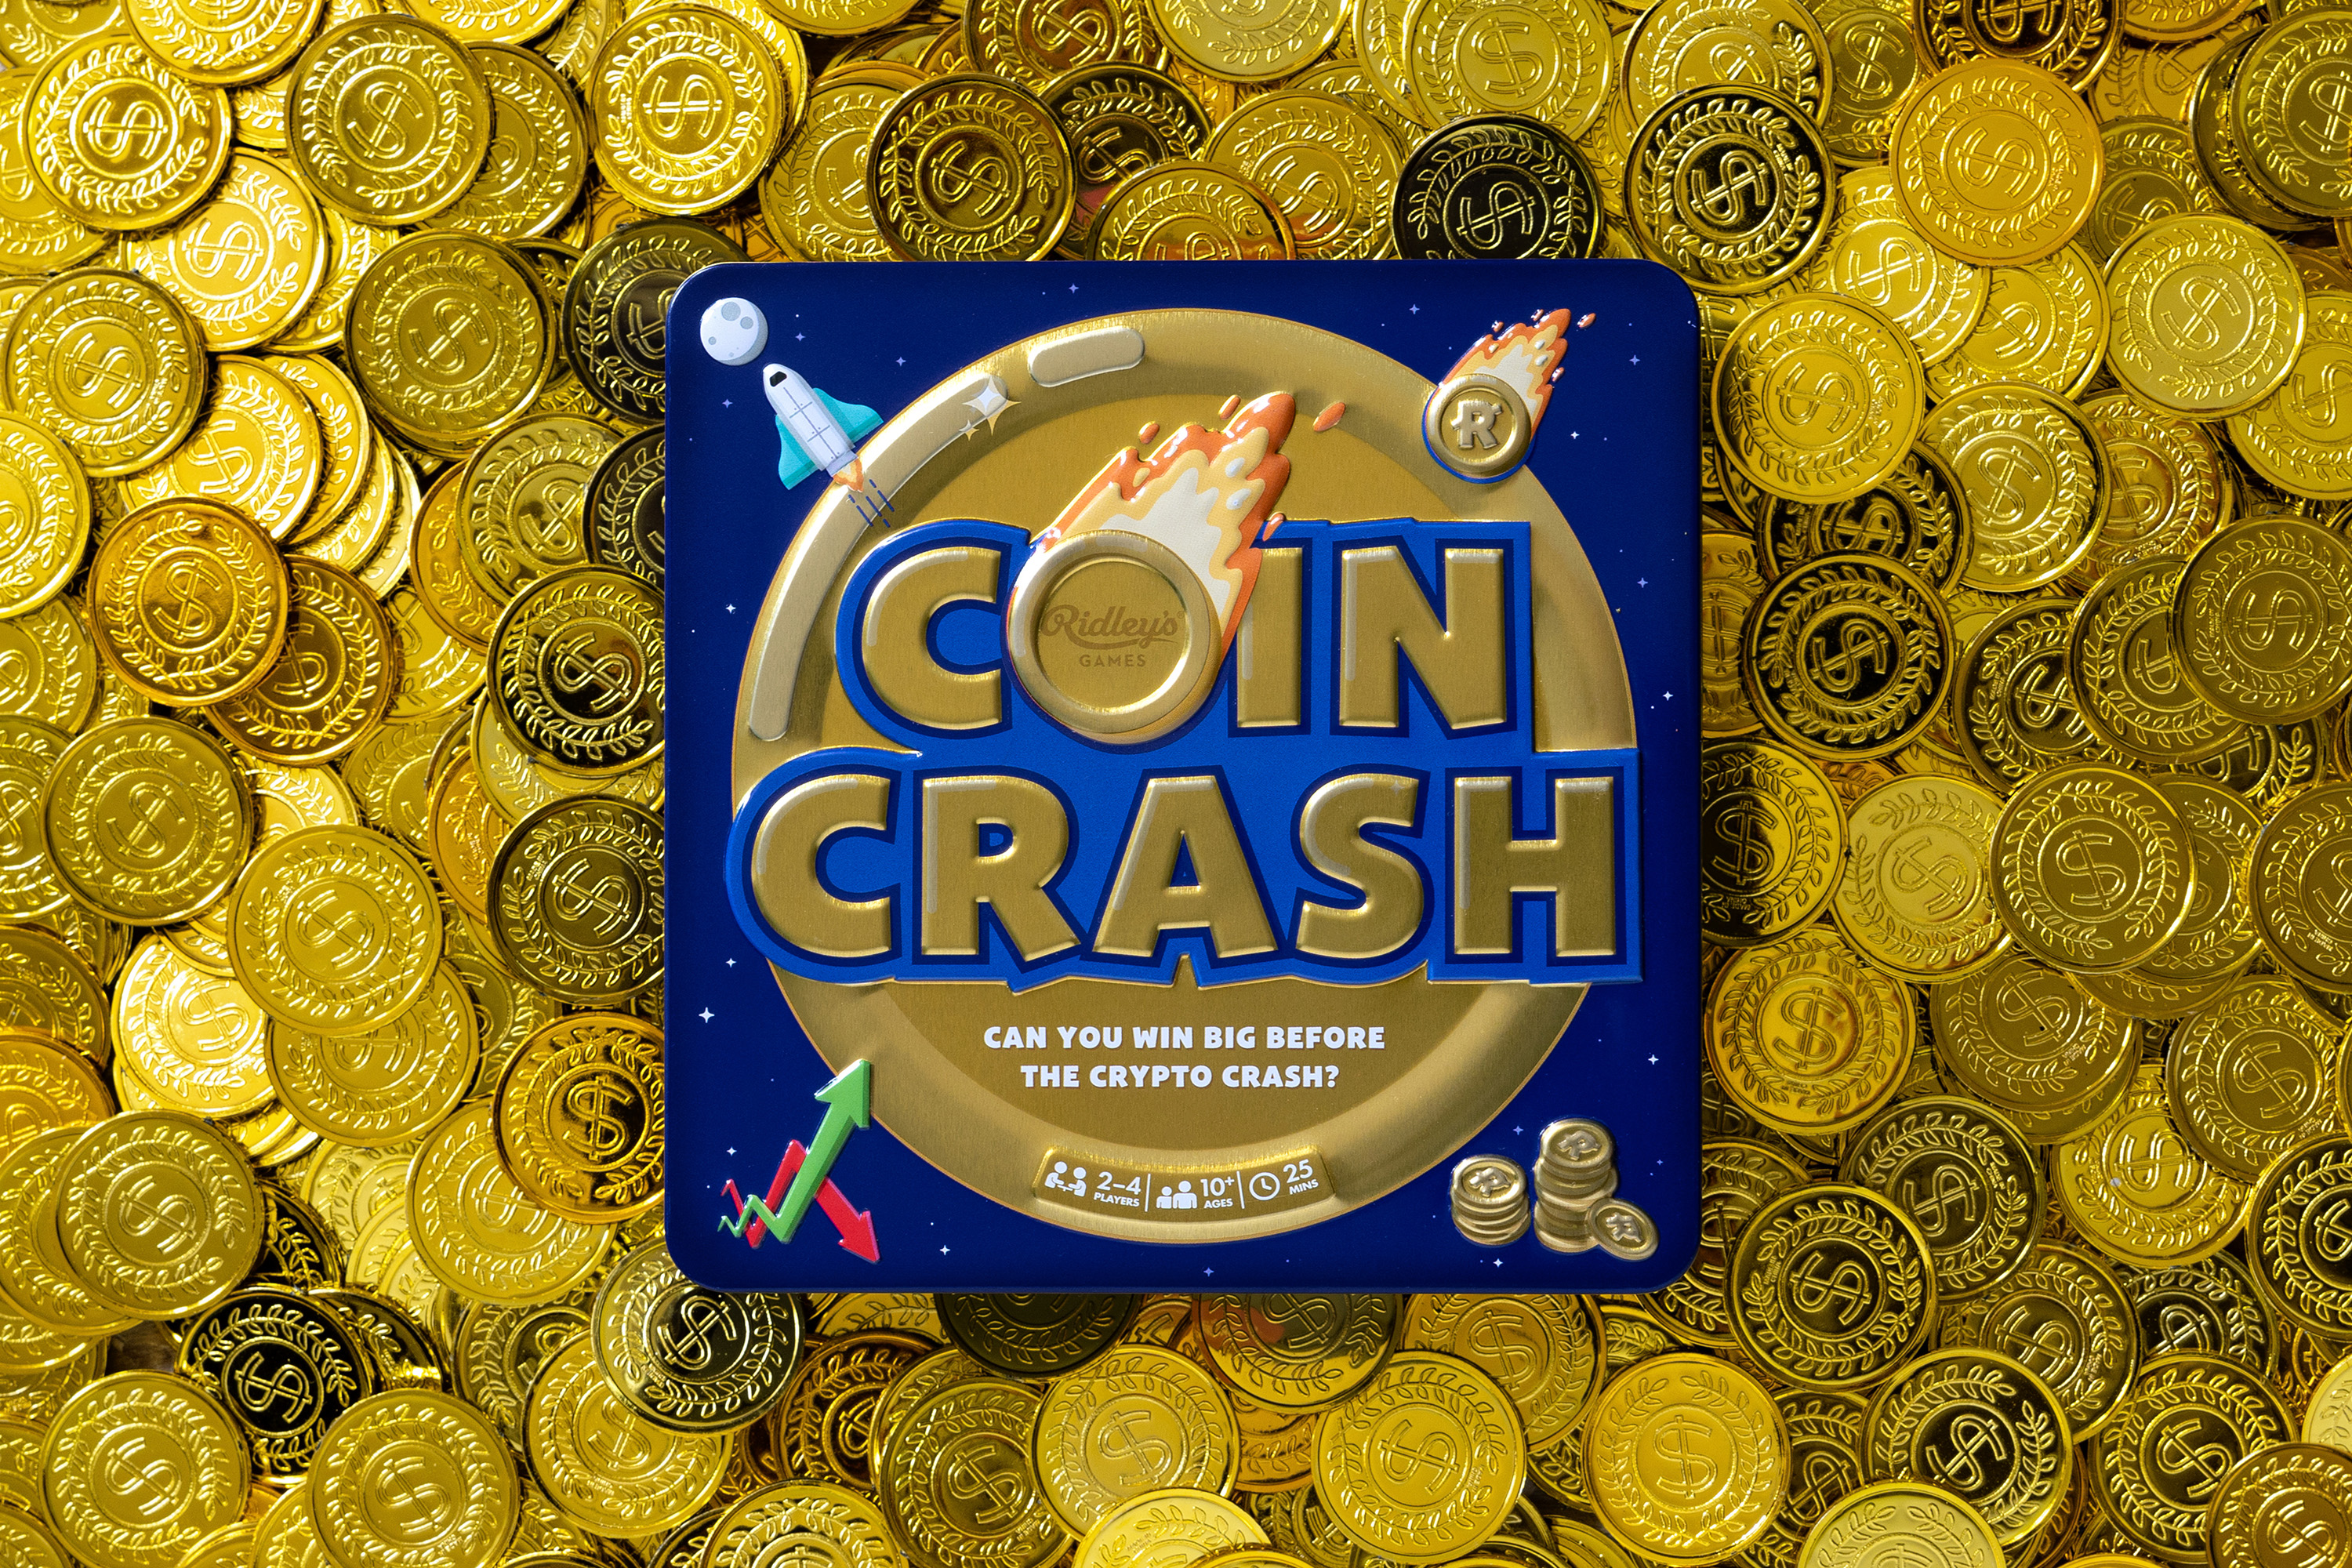 Coin Crash